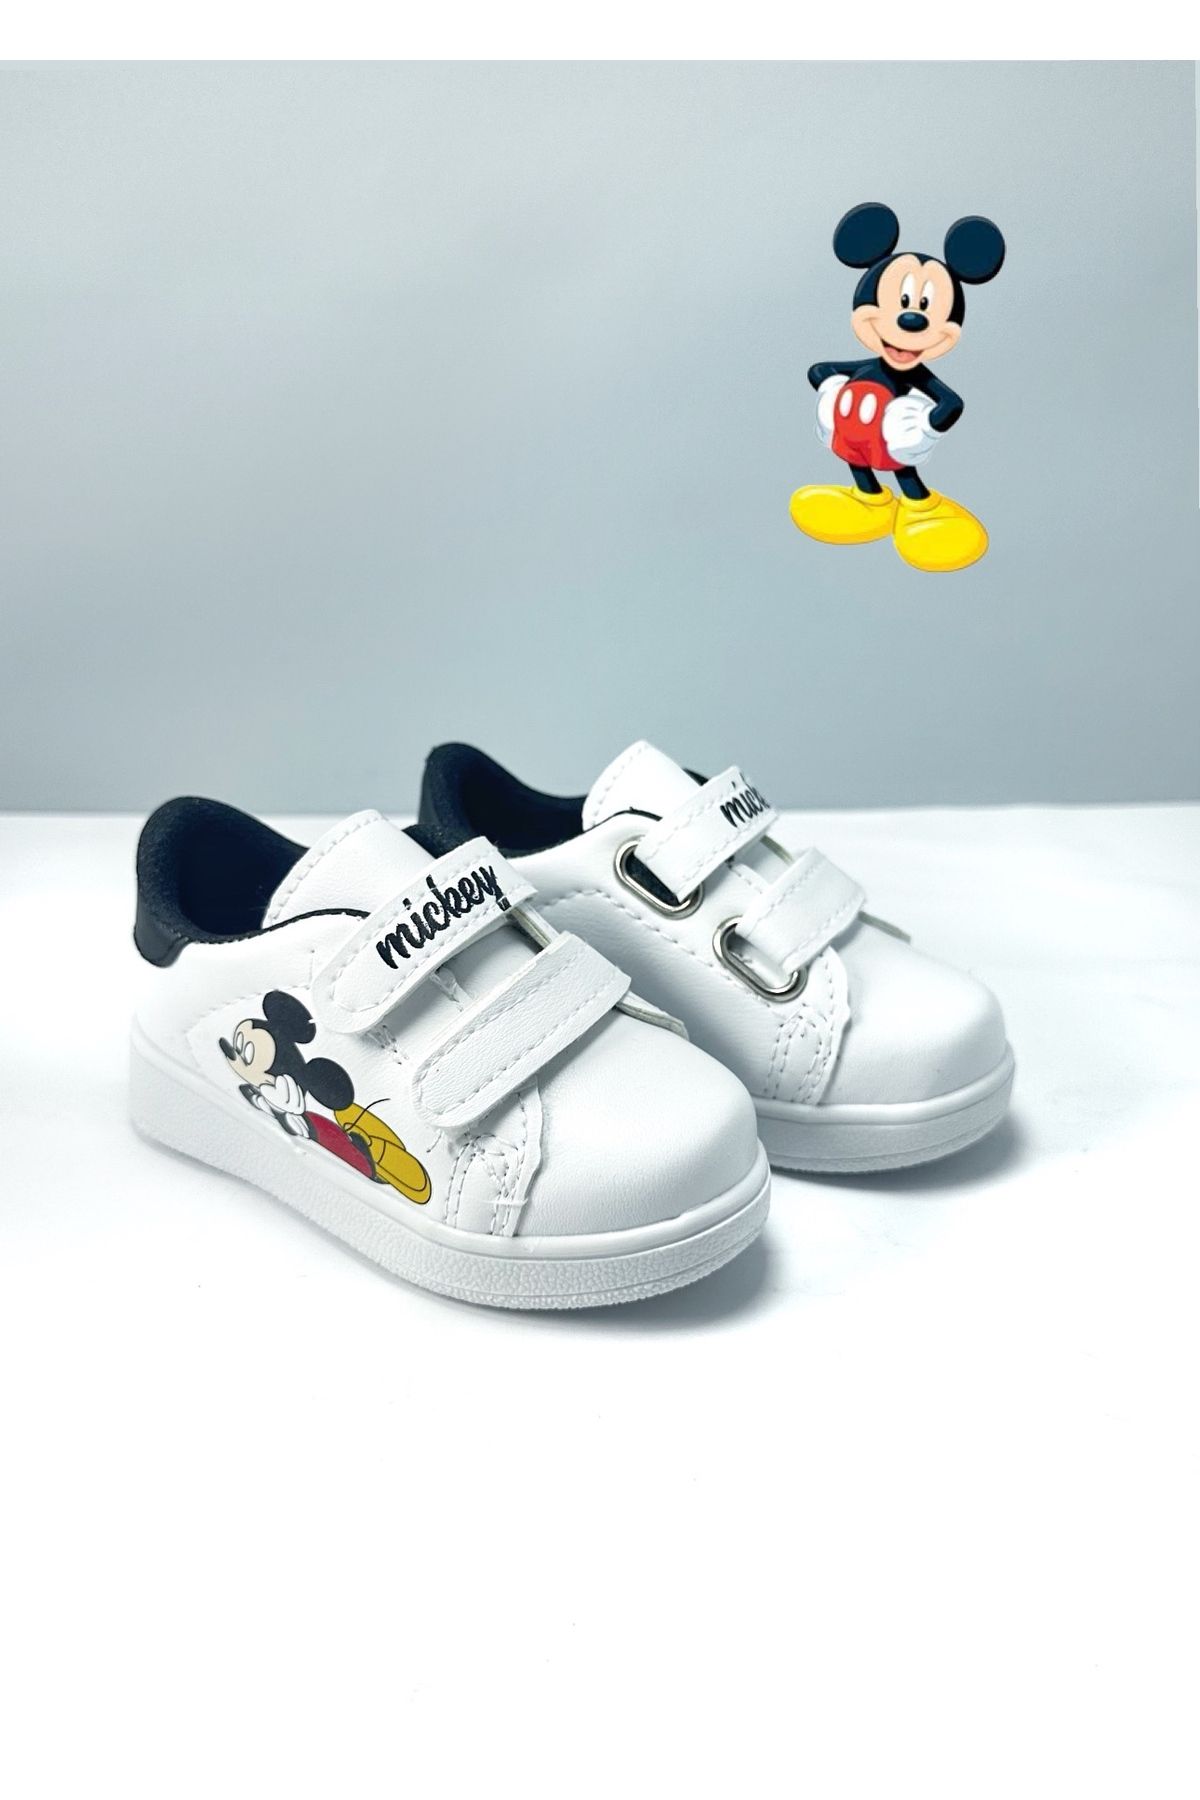 DUES Mickey Mouse Bebek Ayakkabı Çocuk Günlük Spor Ayakkabı